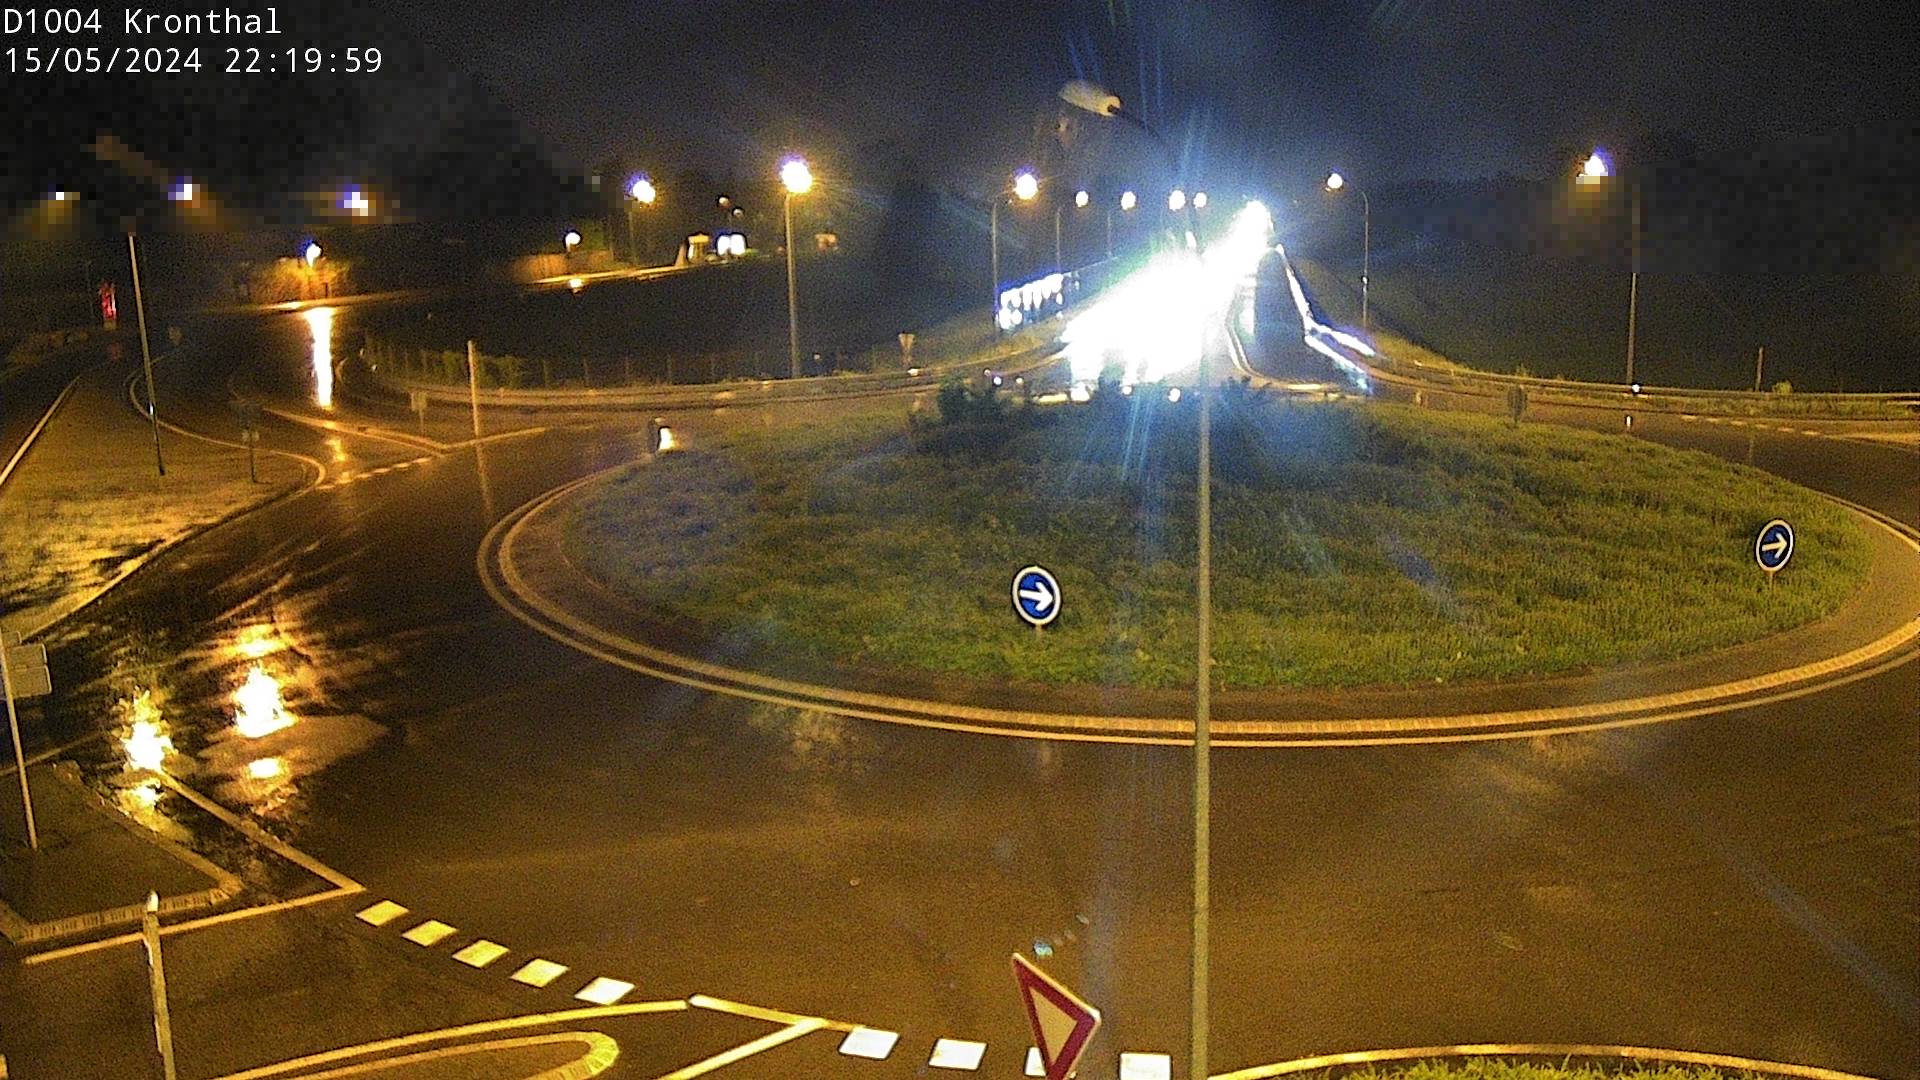 Webcam à la sortie de Marlenheim sur le rond-point joignant la D1002, la D422 et la D2004